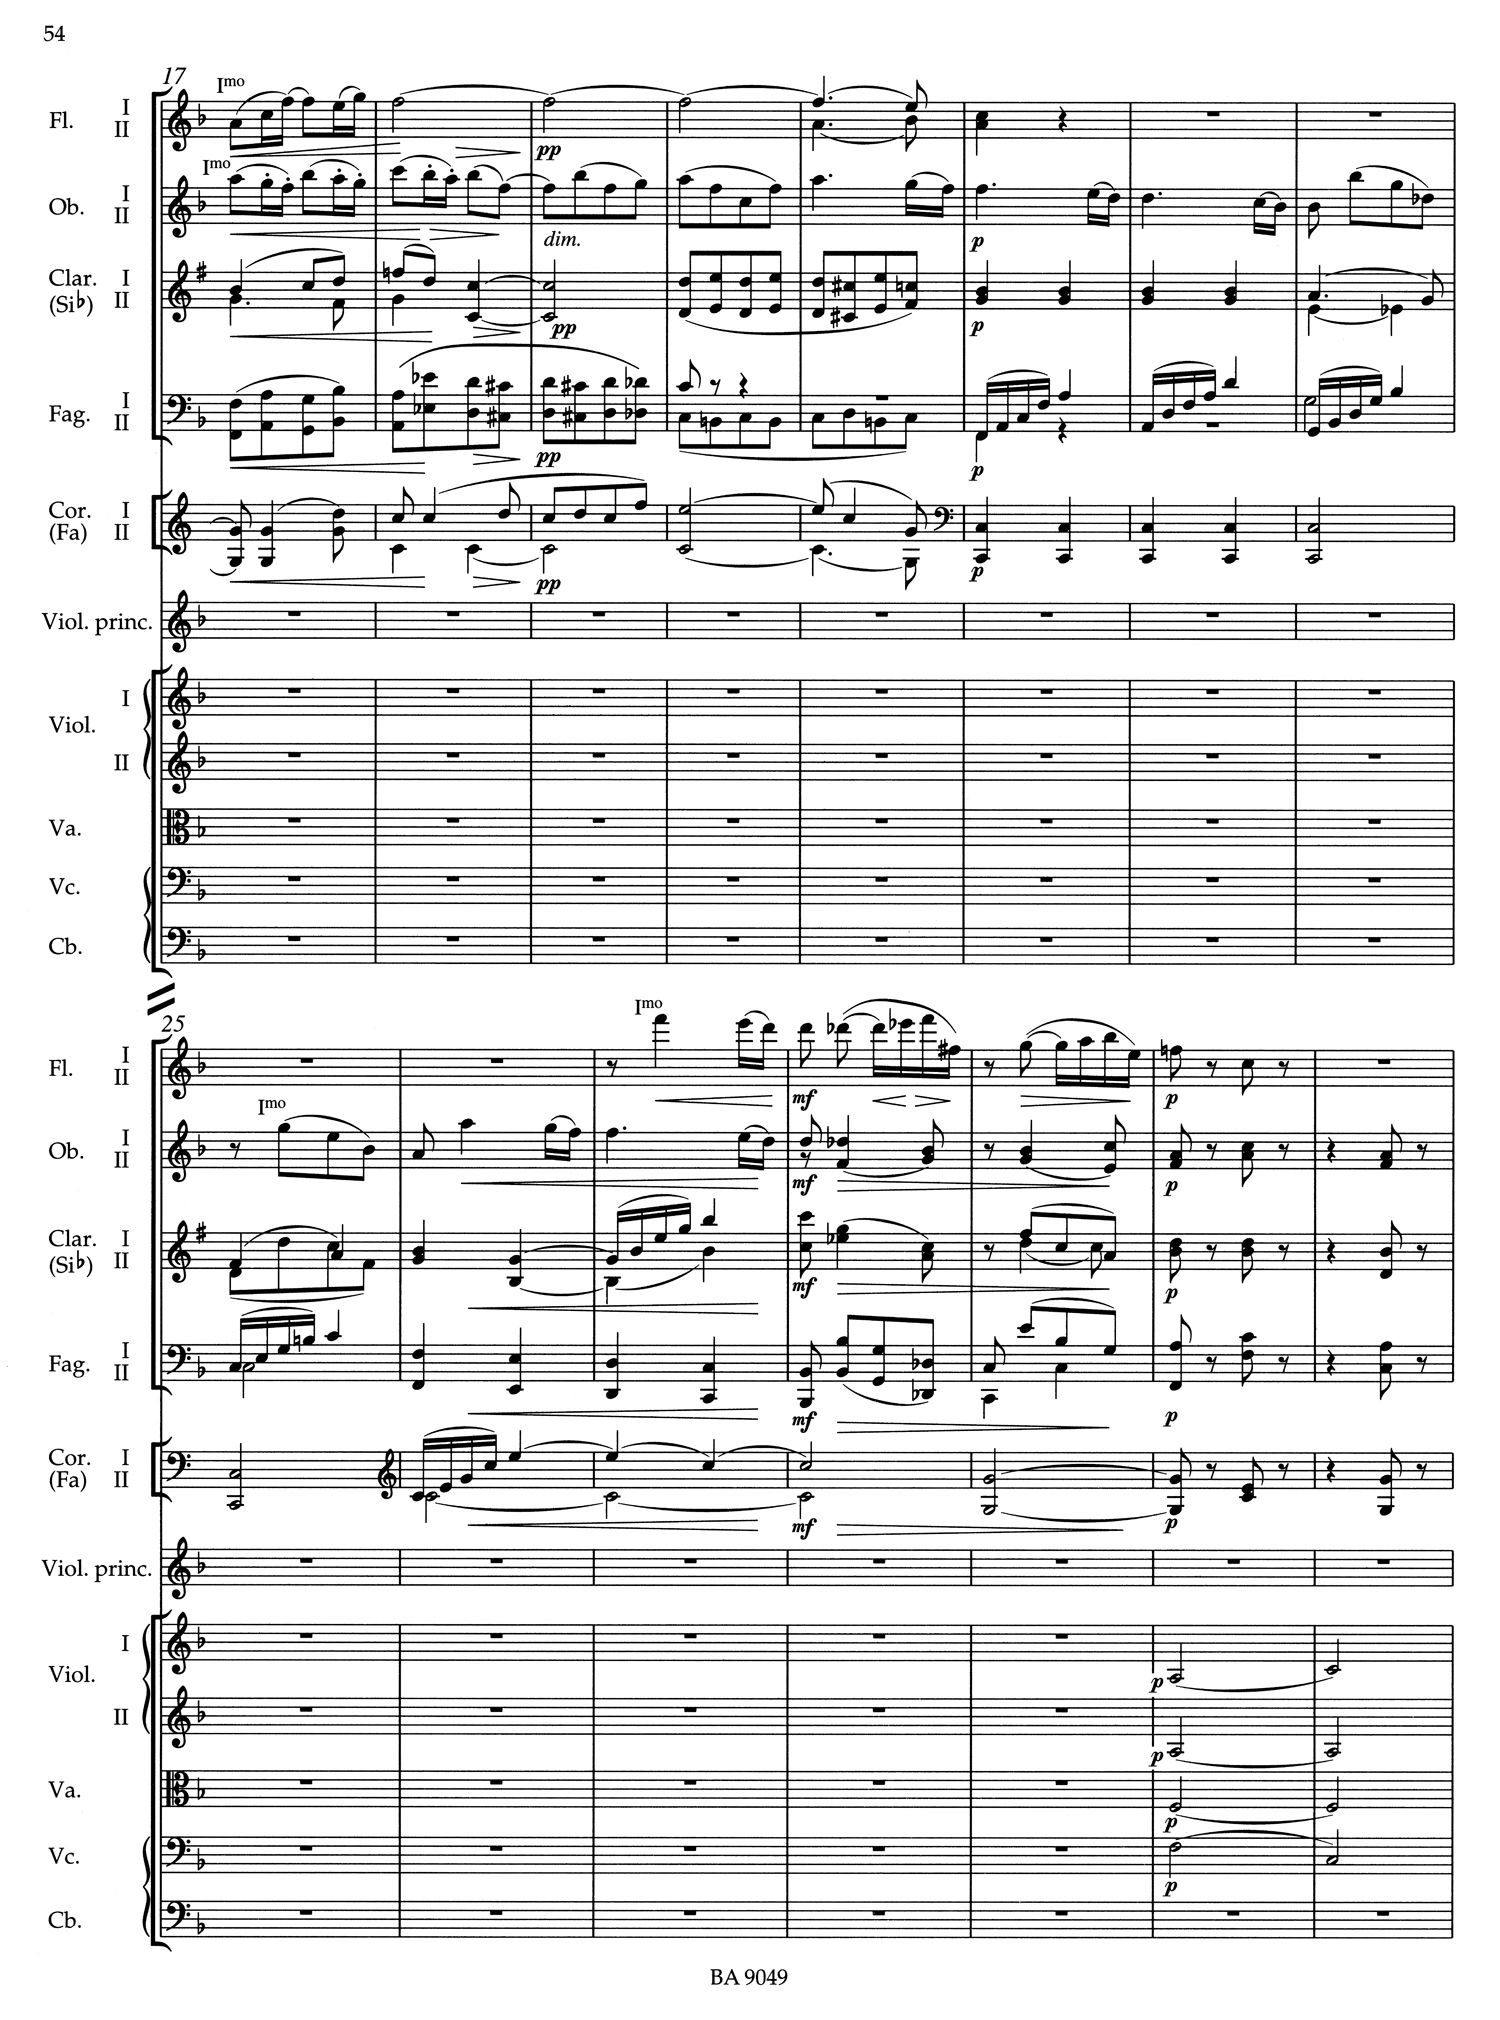 Brahms Violin Score 2.jpg